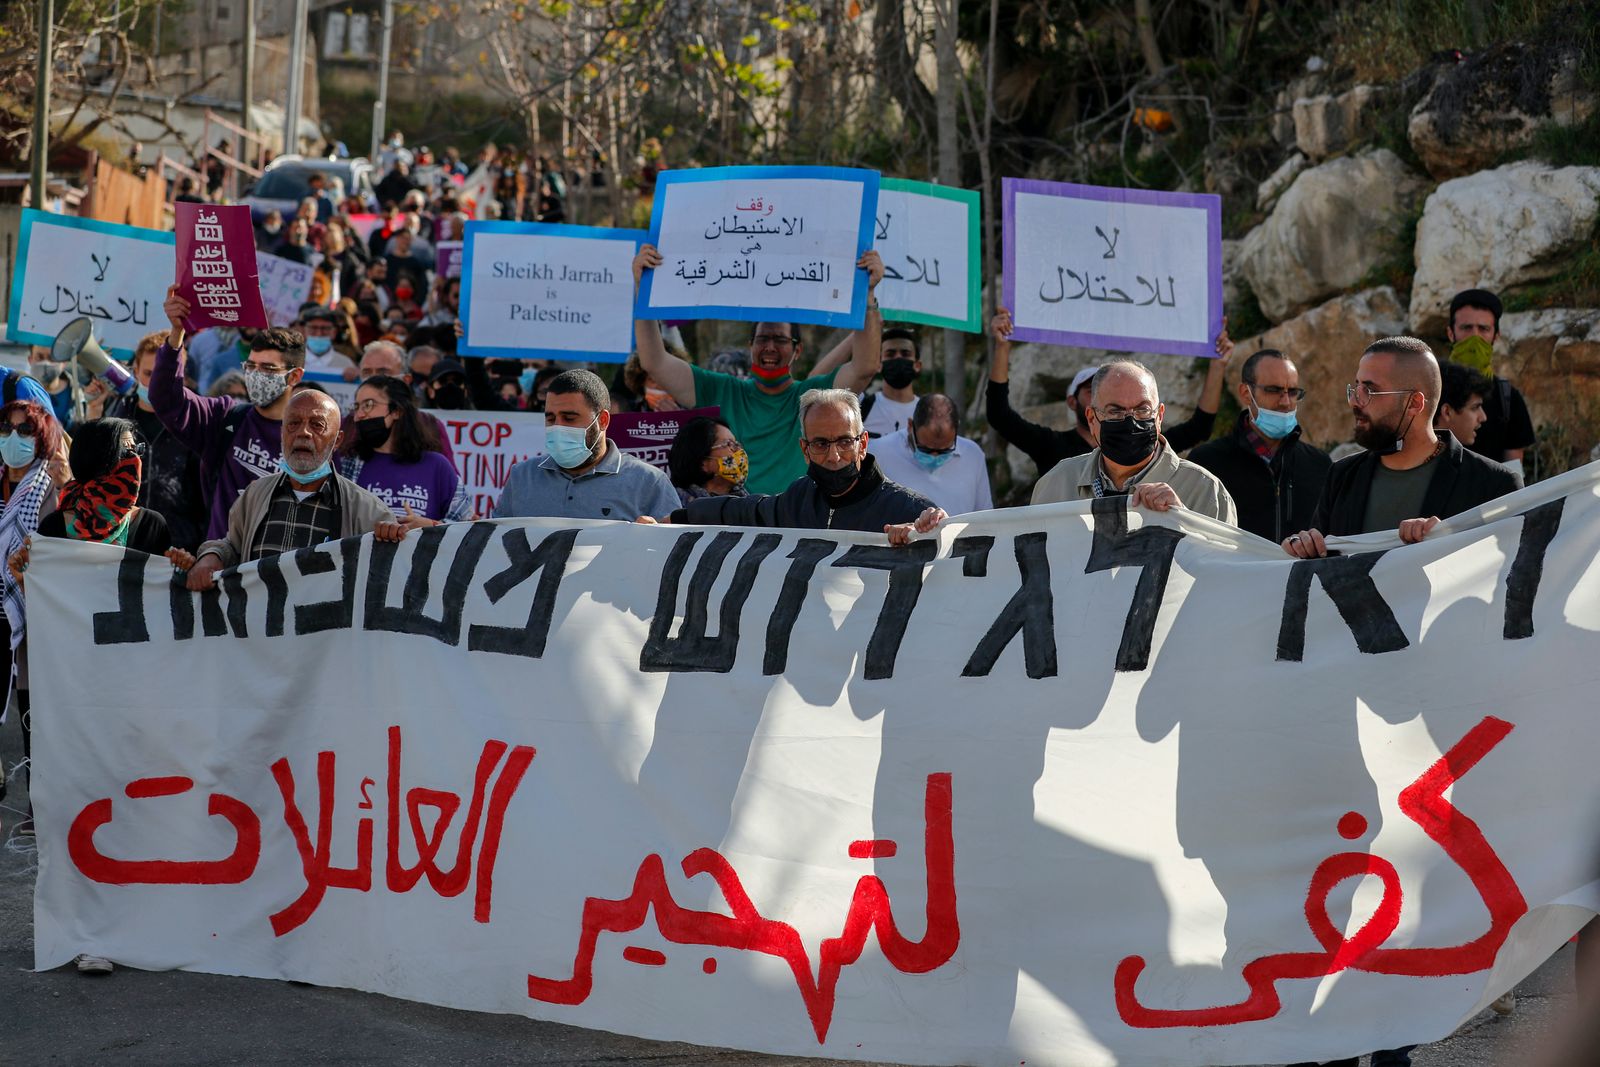 متظاهرون فلسطينيون يرفعون لافتات ضد عمليات الاستيطان الإسرائيلي في حي الشيخ جراح في القدس - AFP